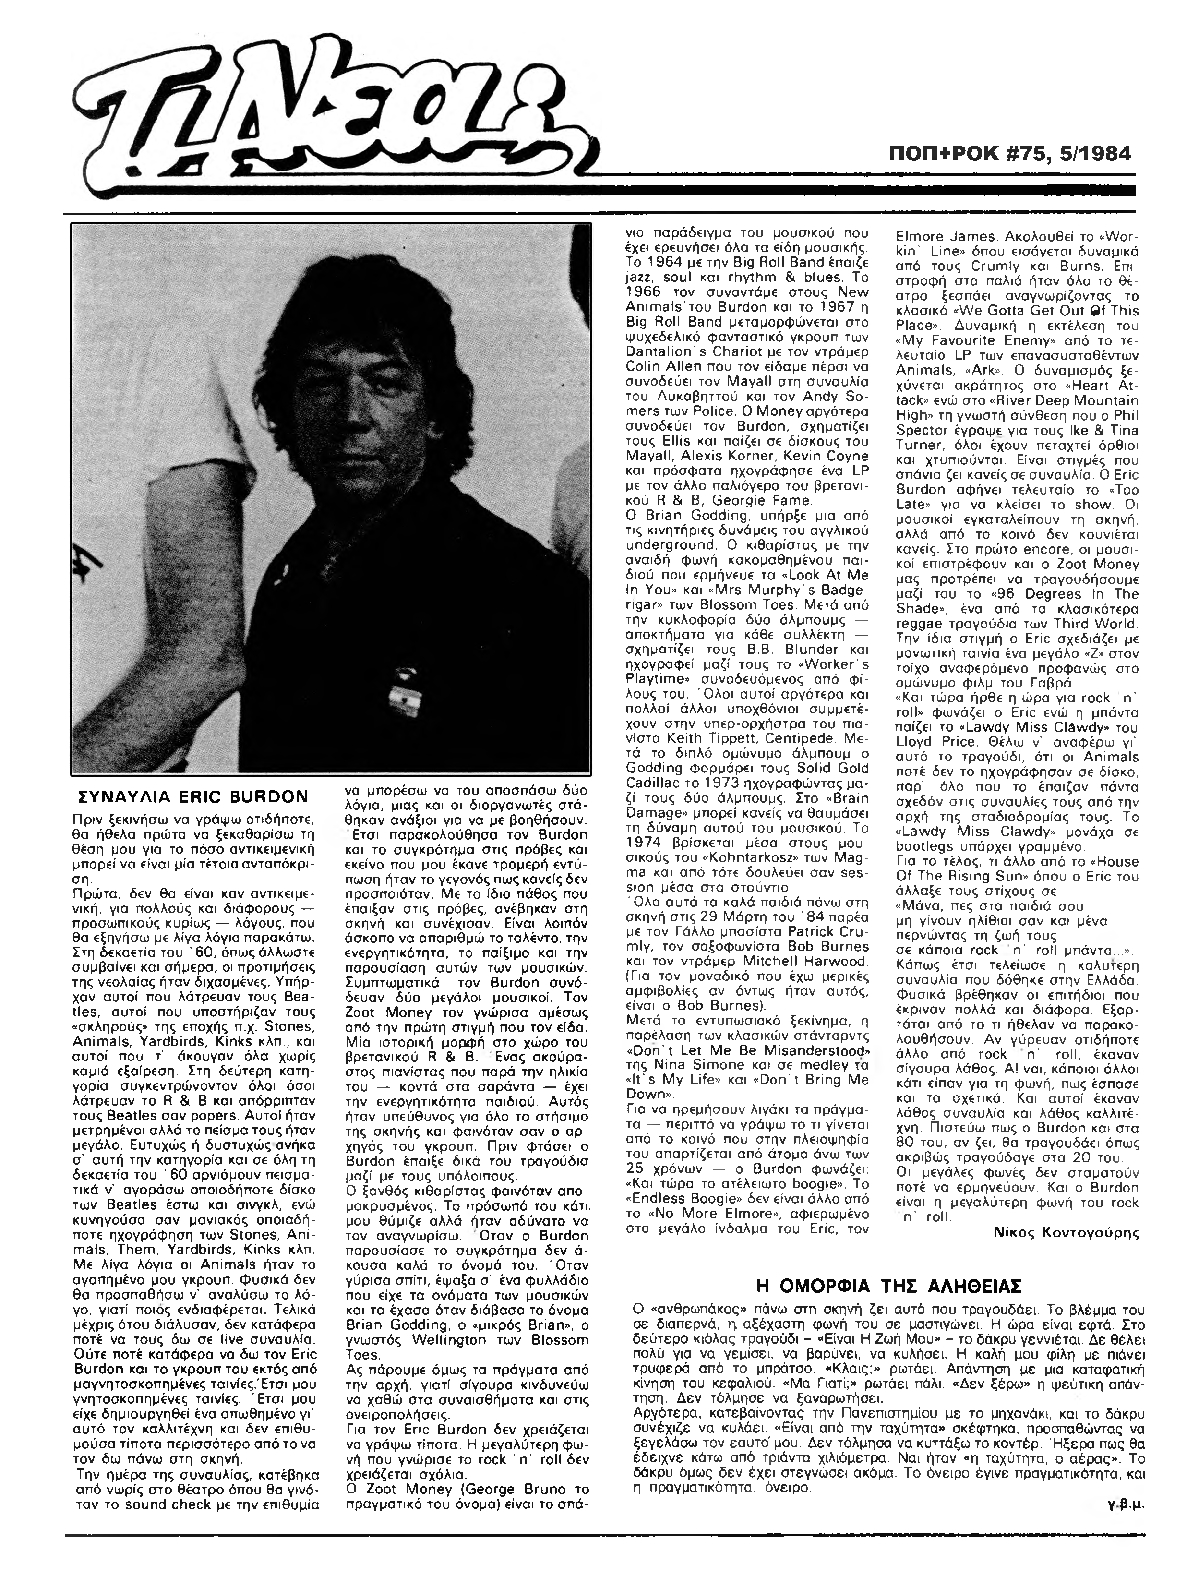 Κριτική της συναυλίας από τον Νίκο Κοντογούρη στο περιοδικό ΠΟΠ+ΡΟΚ Μάιος 1984 (από το αρχείο του Θανάση Ζελιαναίου)